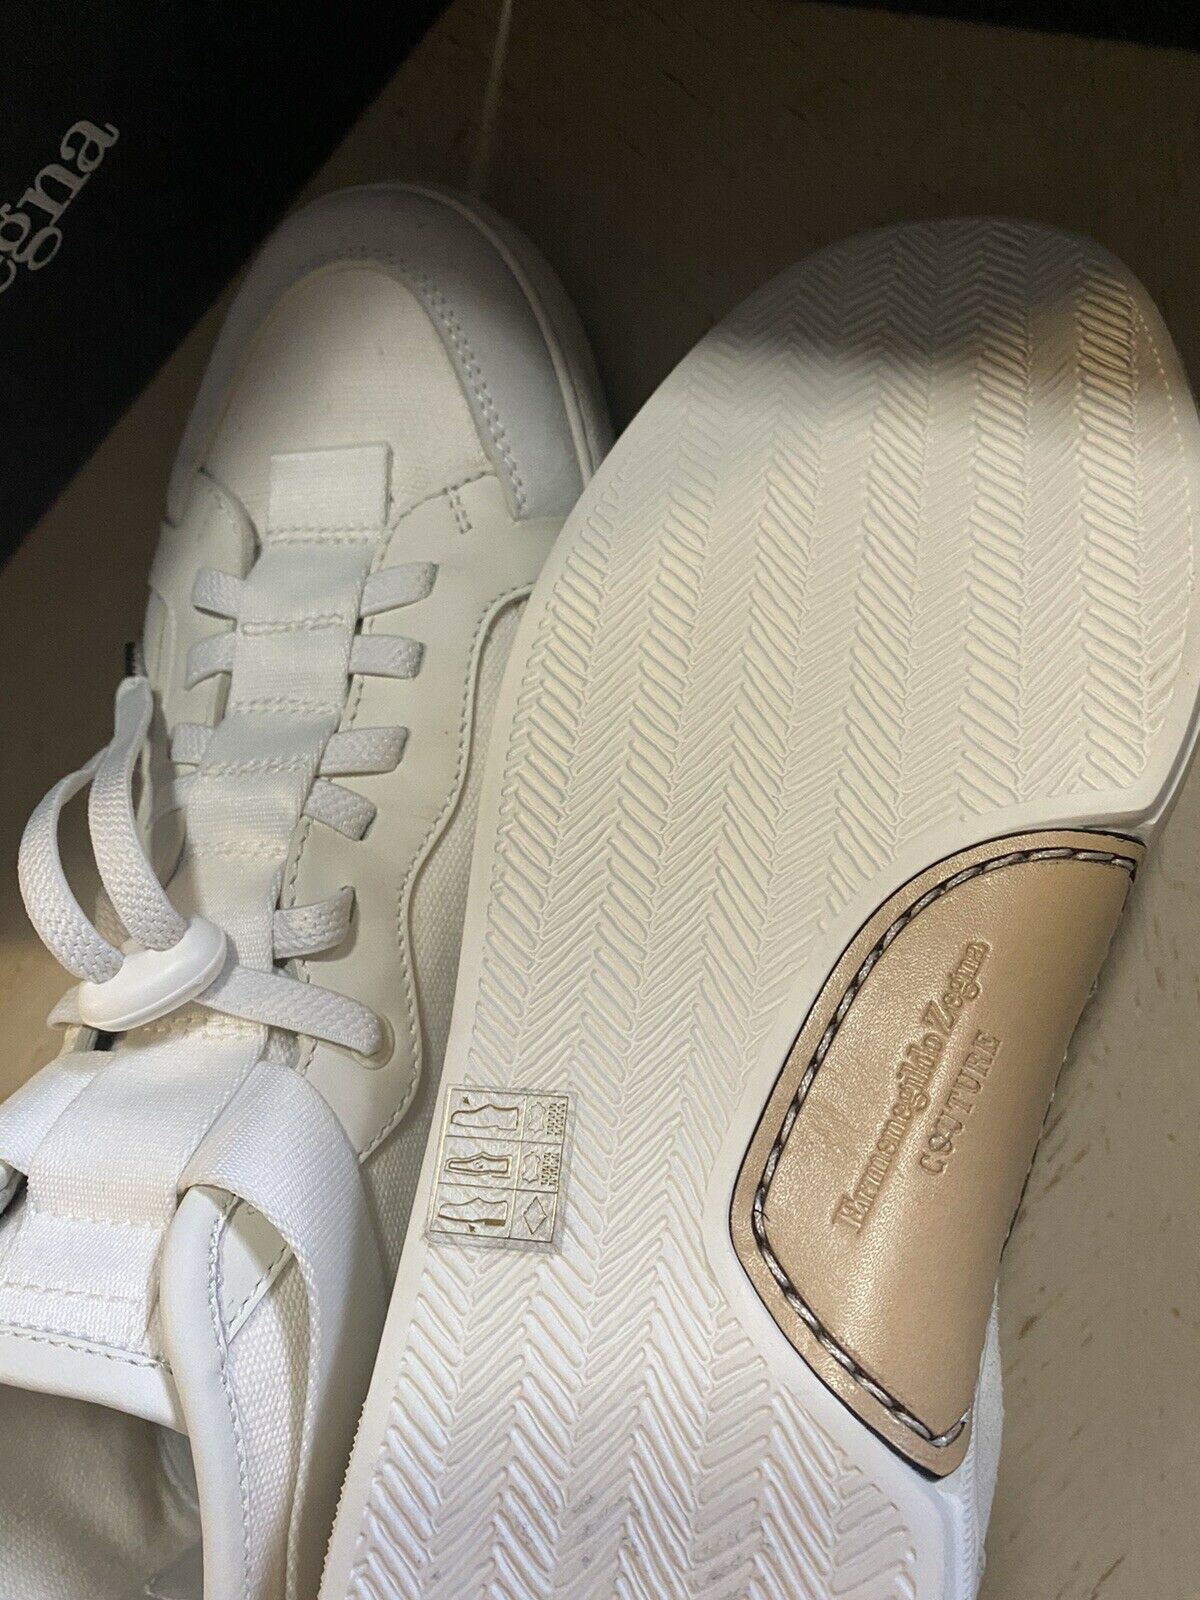 Neue $795 Ermenegildo Zegna Couture High Top Sneakers Schuhe Weiß/Grau 8 US Italien